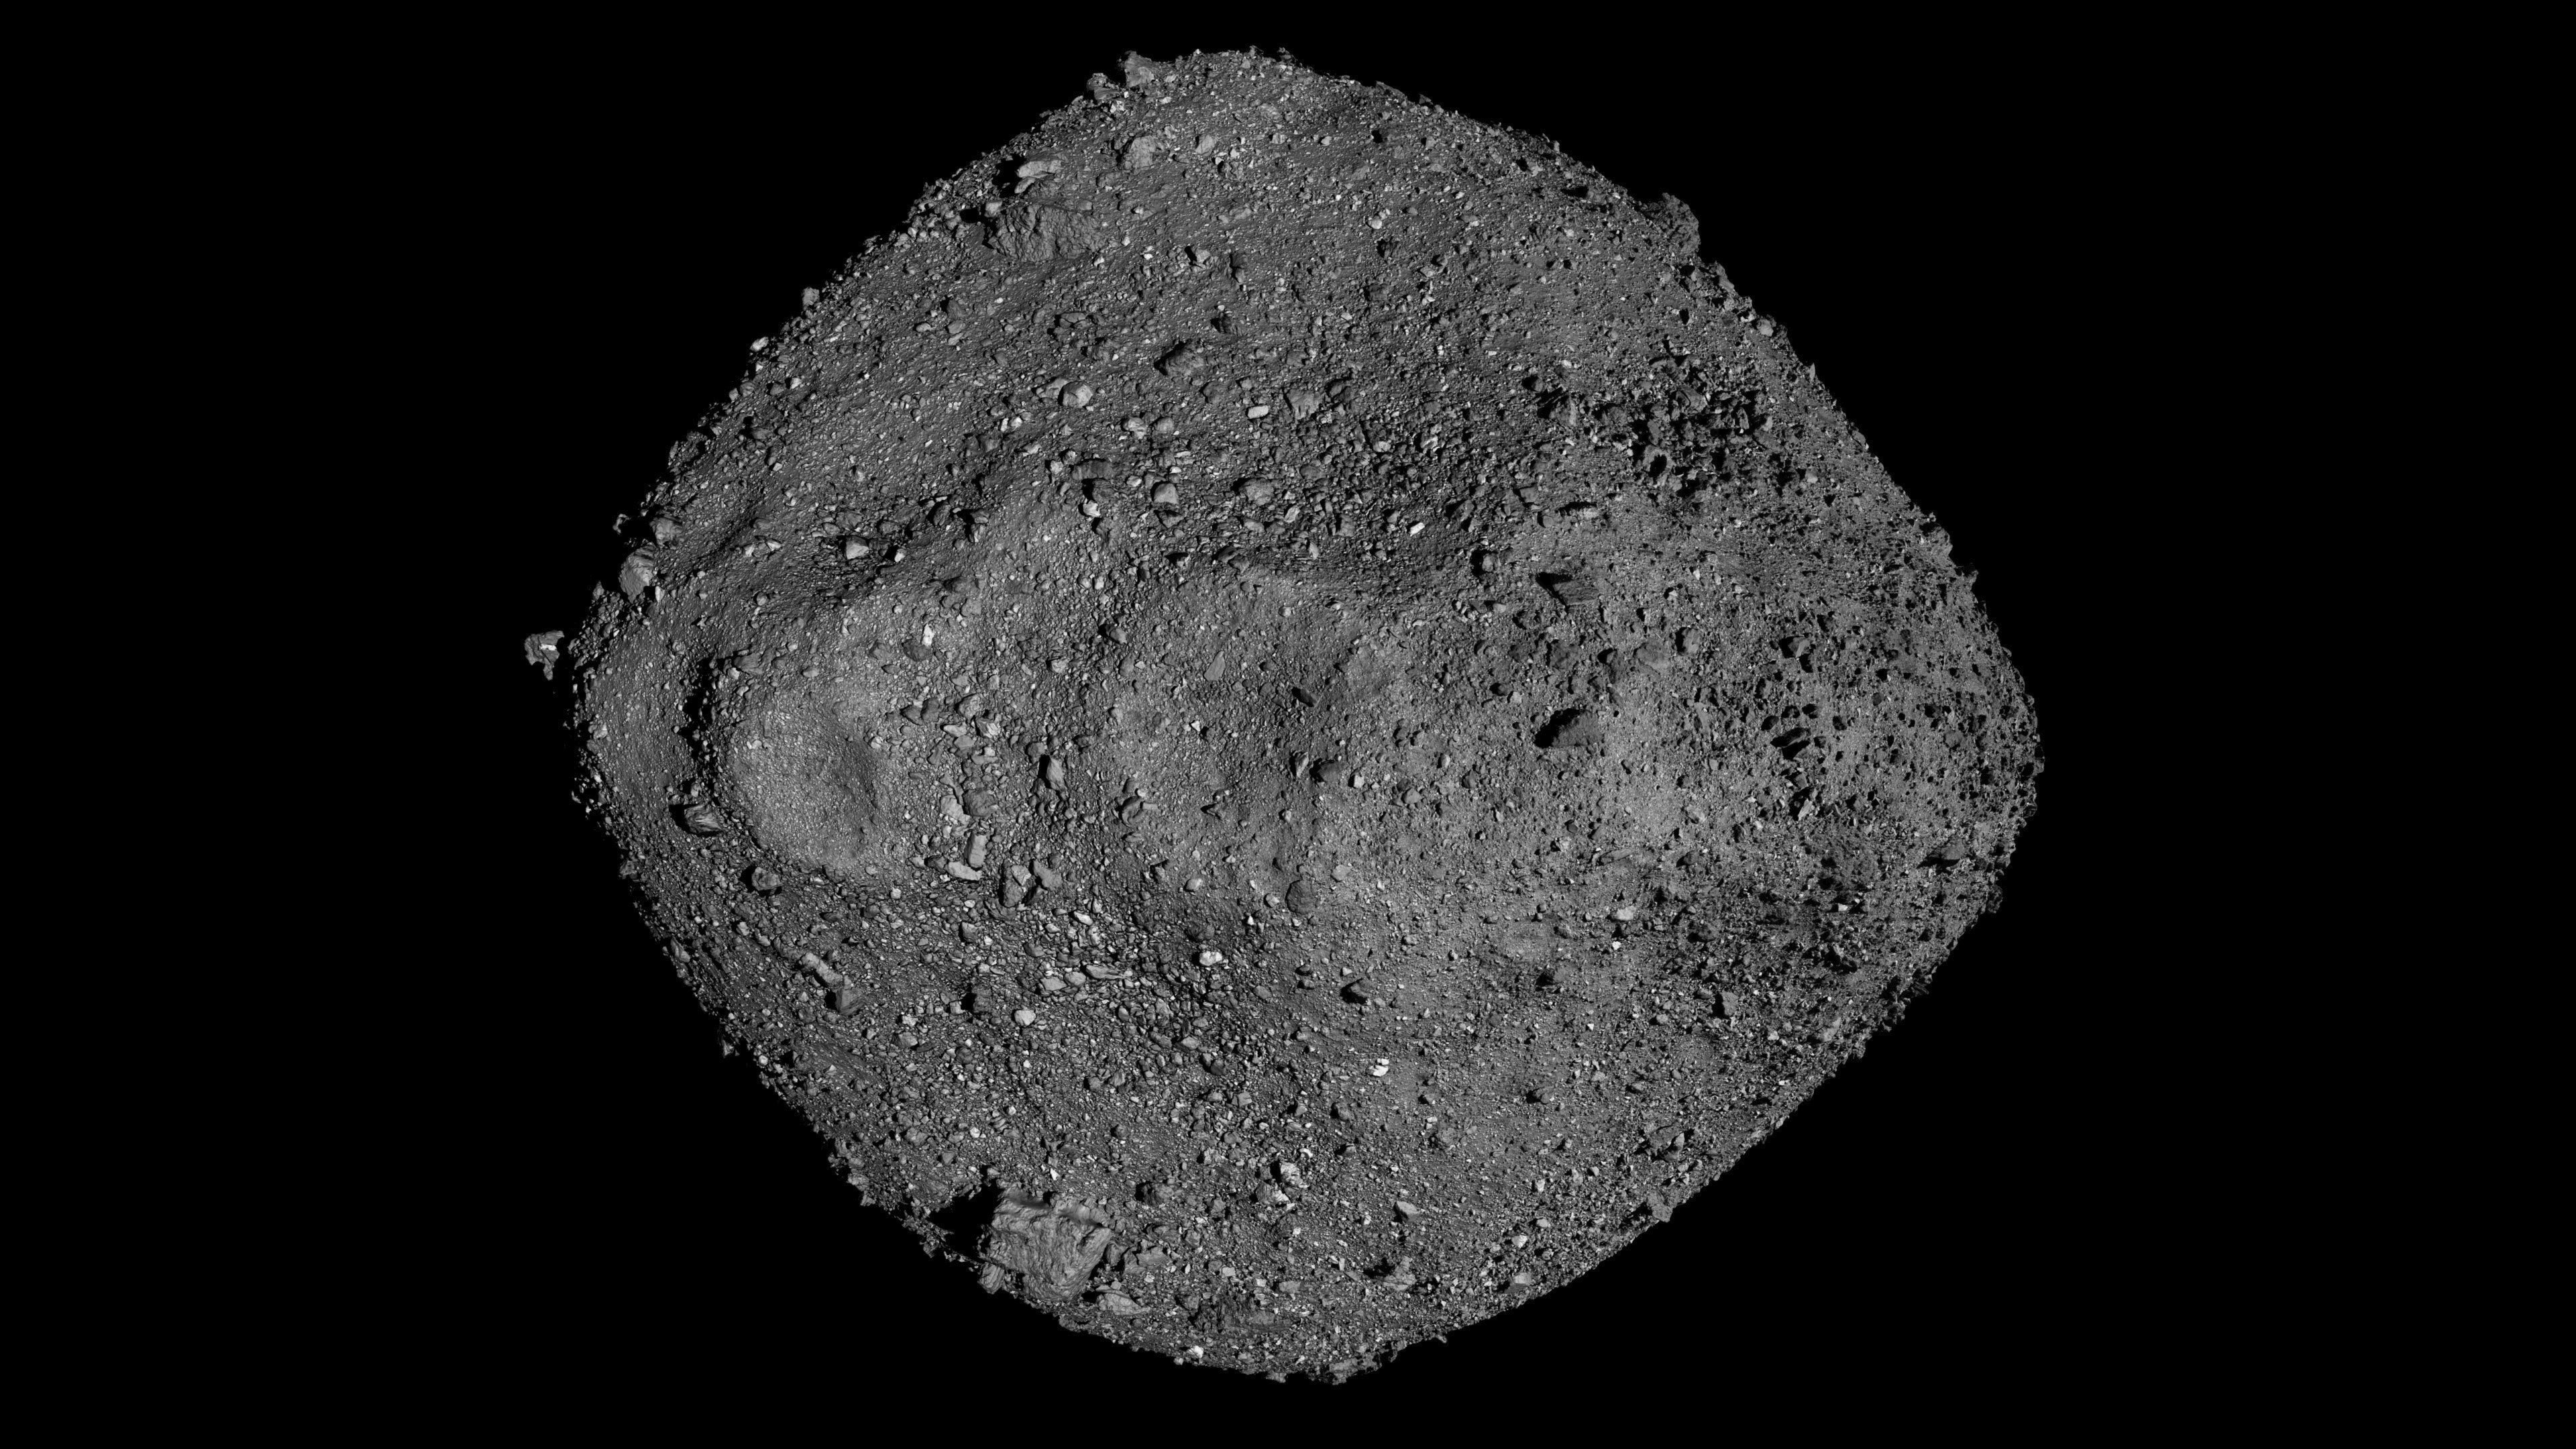 Asteroide da NASA